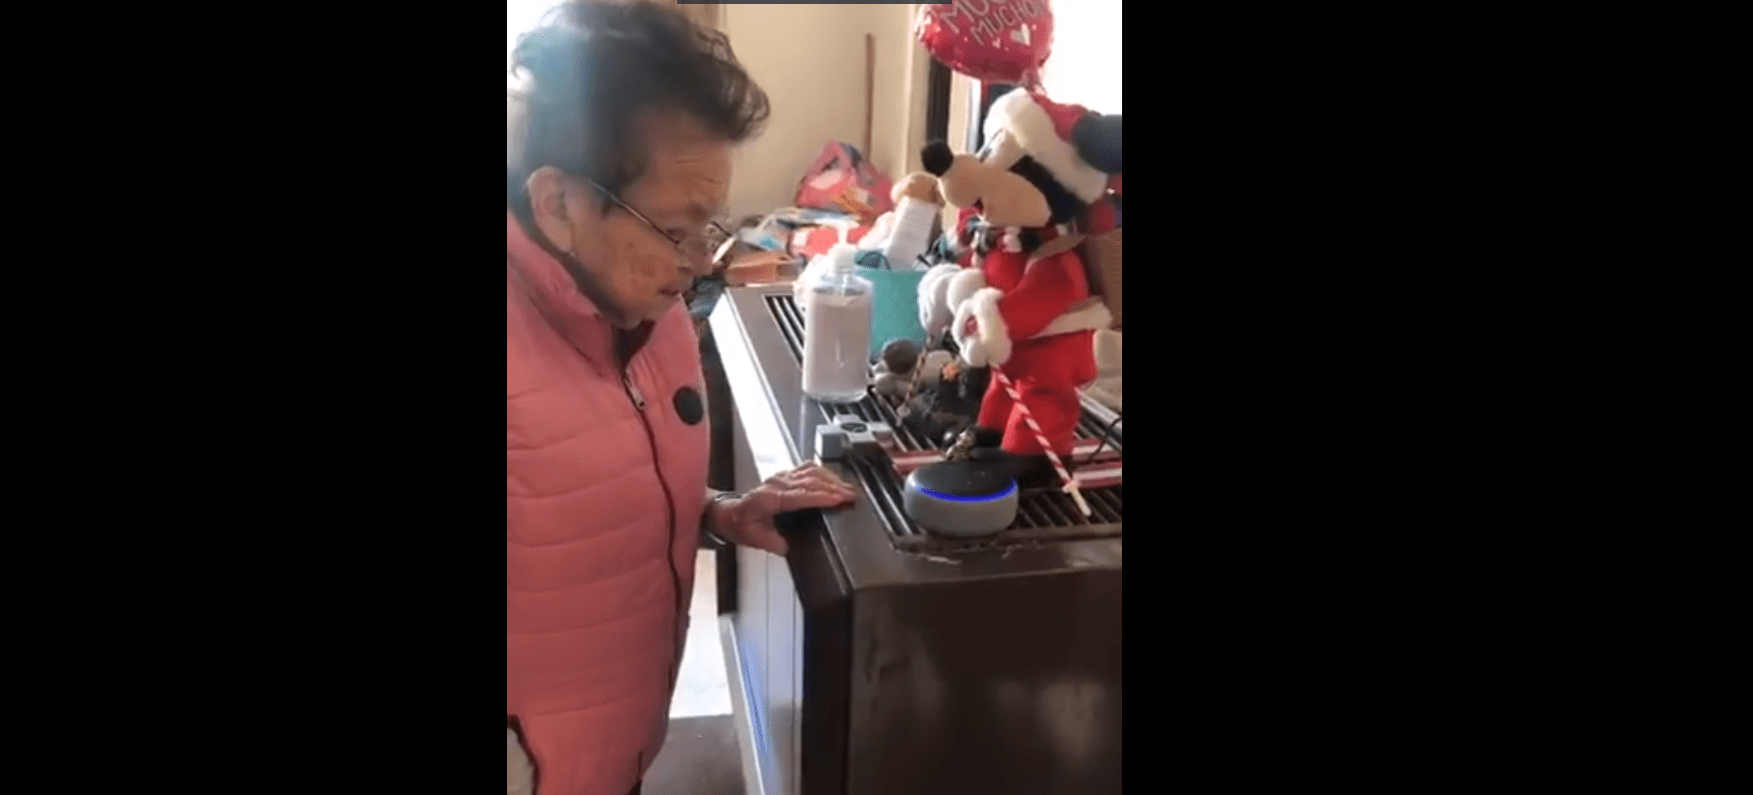 La abuela probando el Amazon Echo Dot. | Foto: Twitter/sophiasinefe